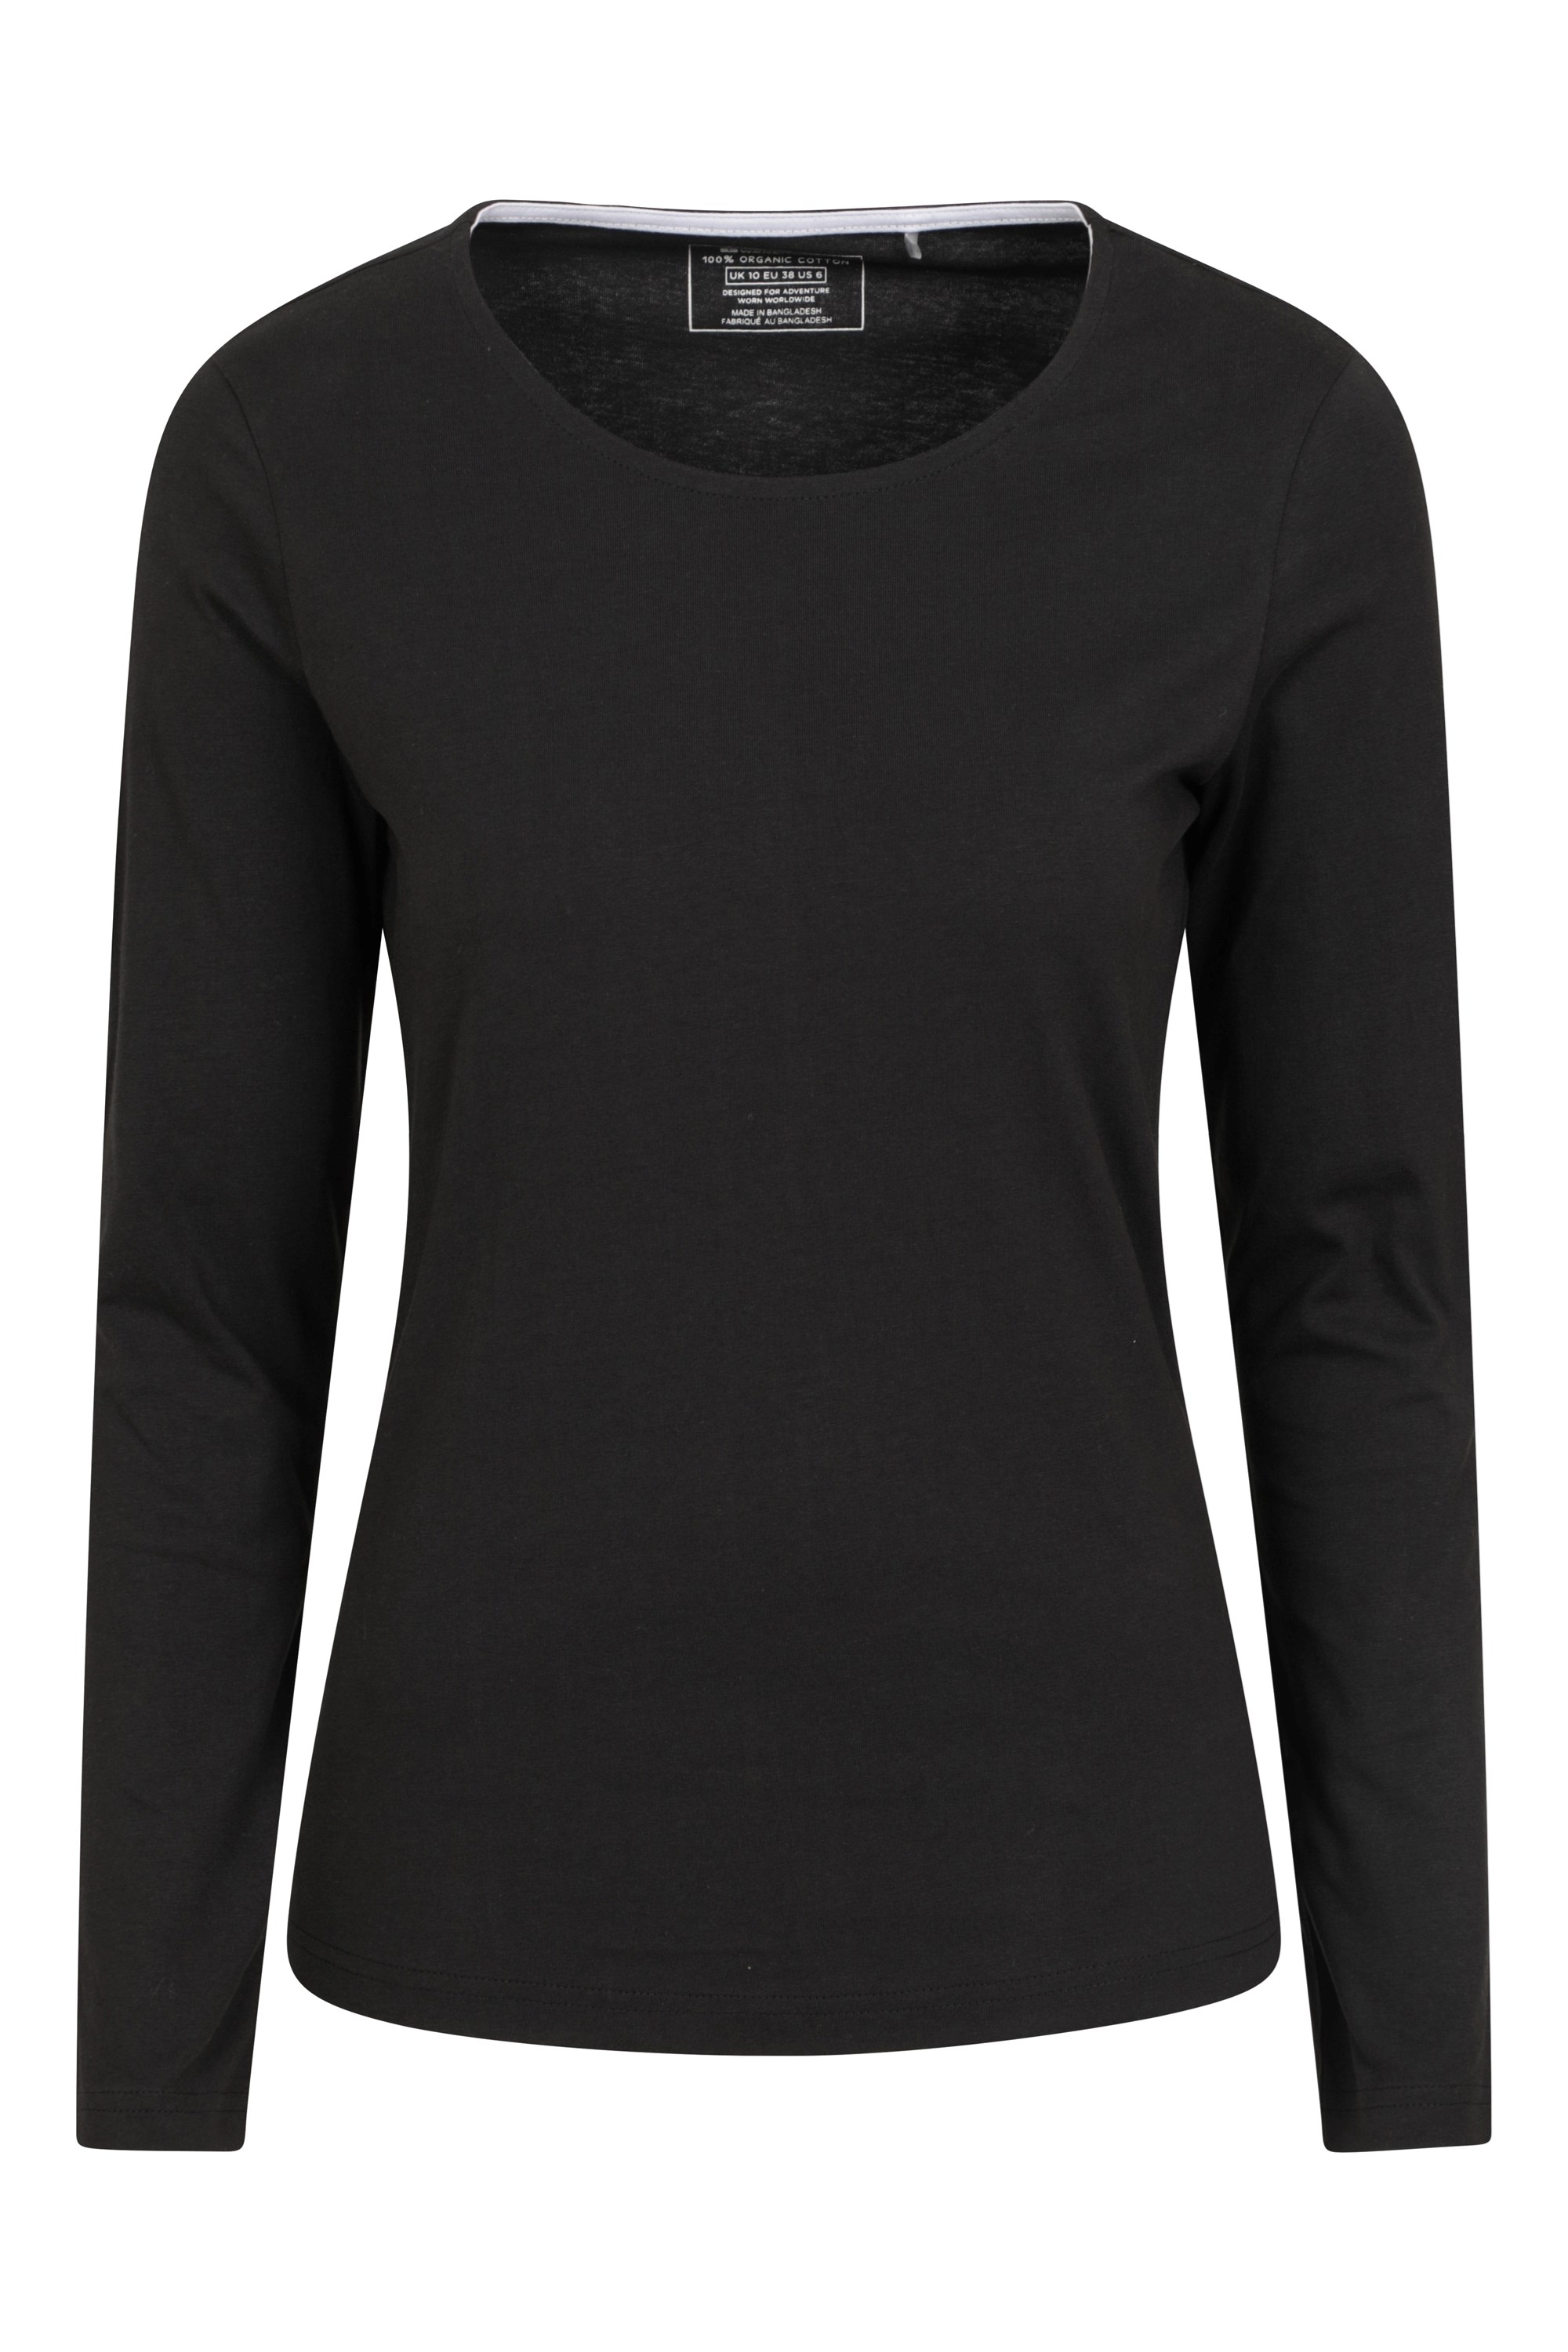 Eden Womens Organic Round Neck T-Shirt - Black